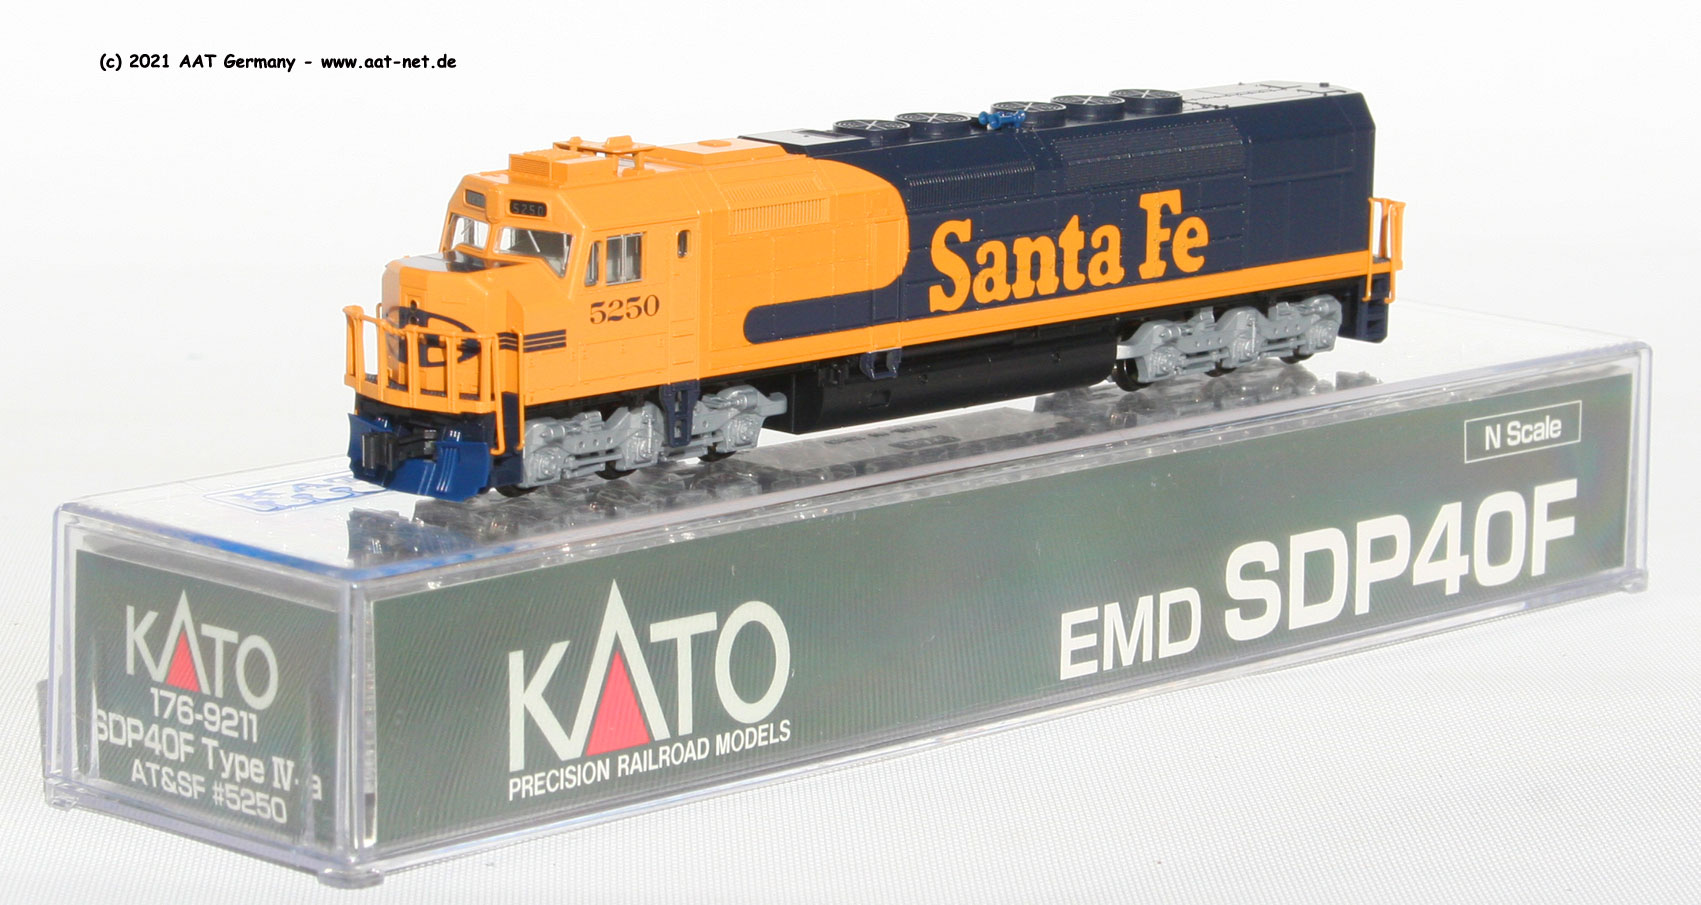 8235円 新しいコレクション KATO 176-9211 N SDP40F Type IV-a AT SF #5250